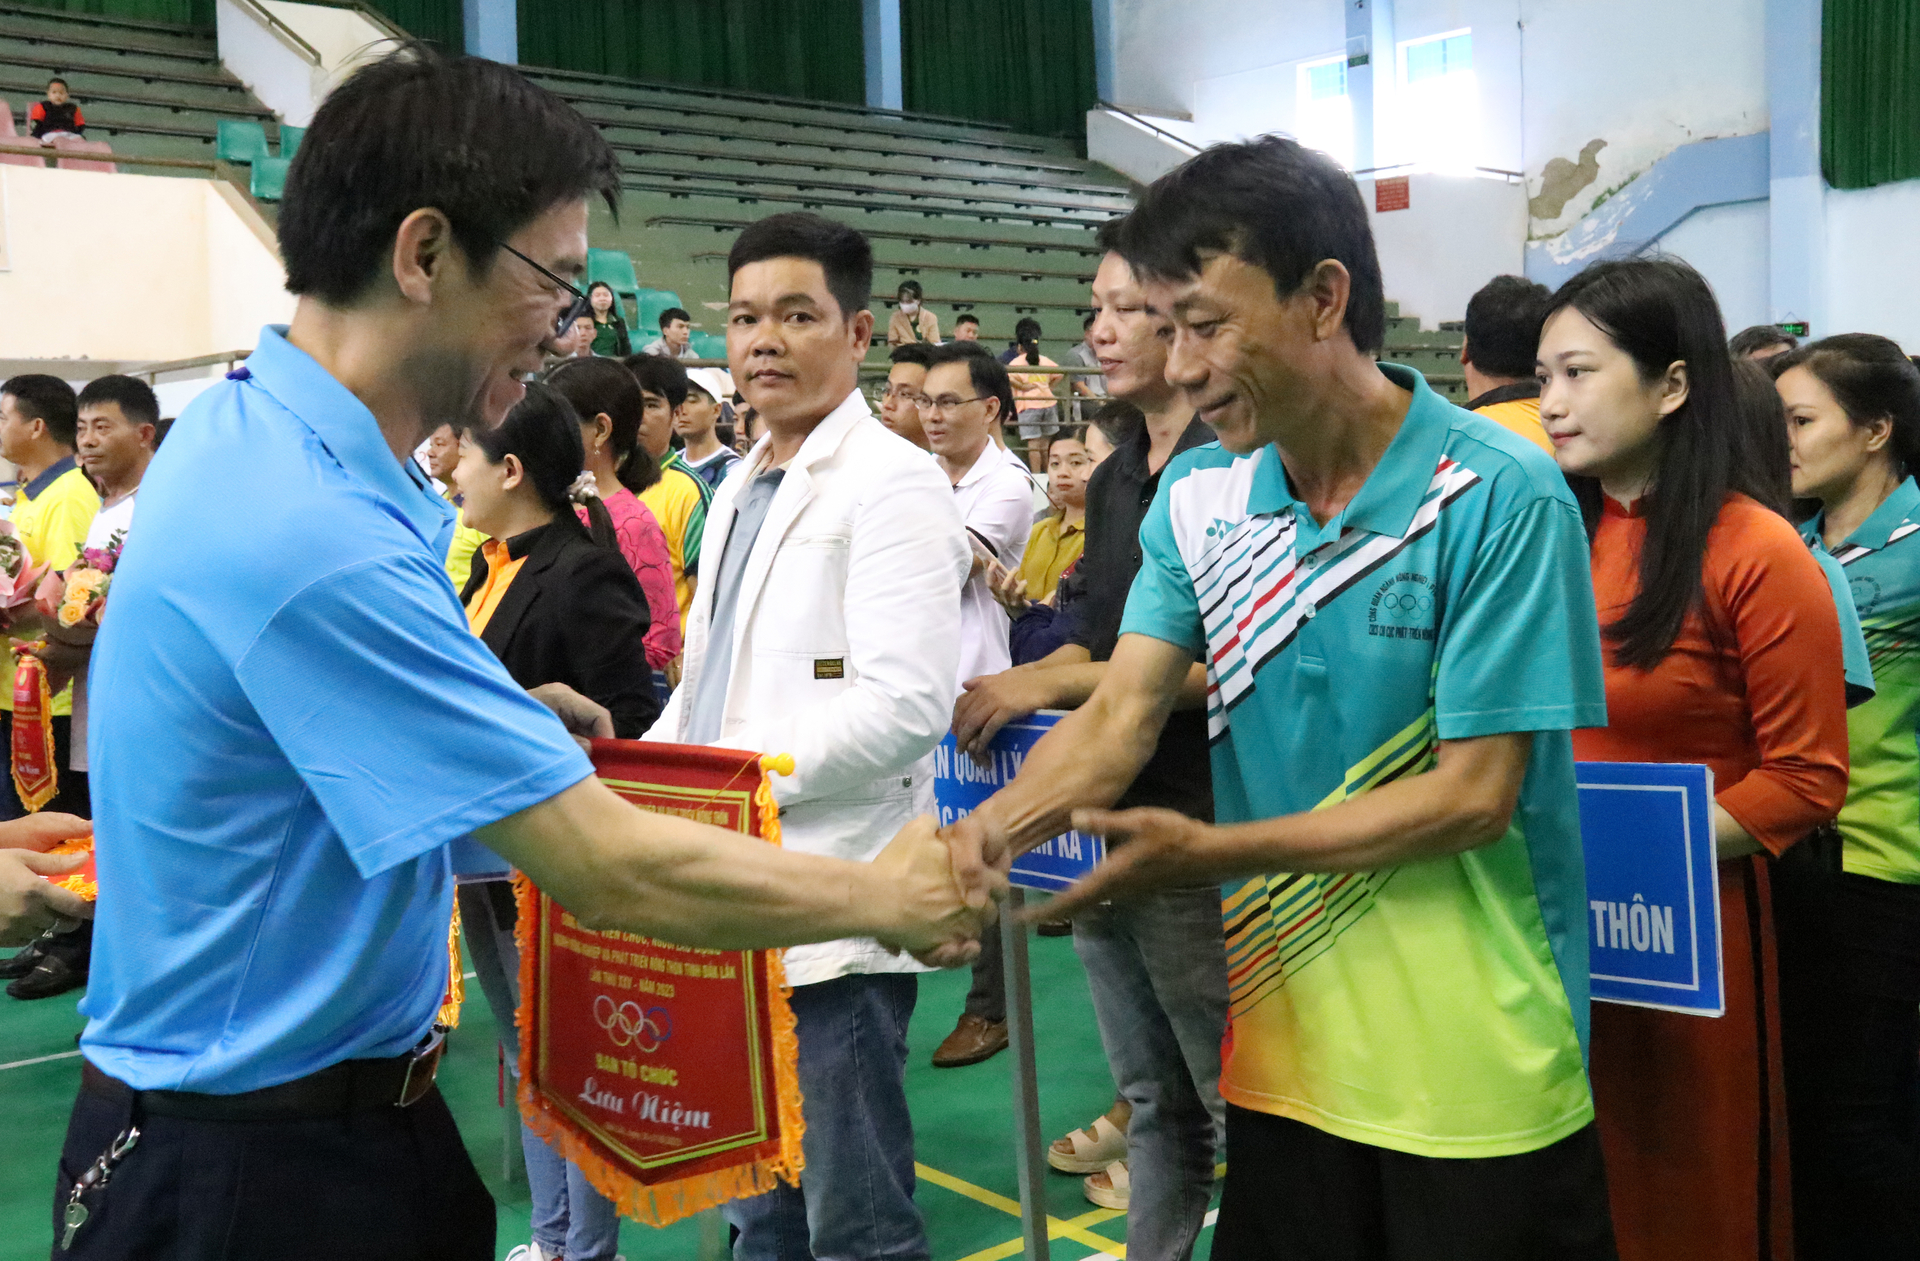 Ông Lê Anh Hùng, Chủ tịch Công đoàn ngành NN-PTNT tỉnh Đắk Lắk trao cờ lưu niệm cho các đoàn vận động viên. Ảnh: Quang Yên.